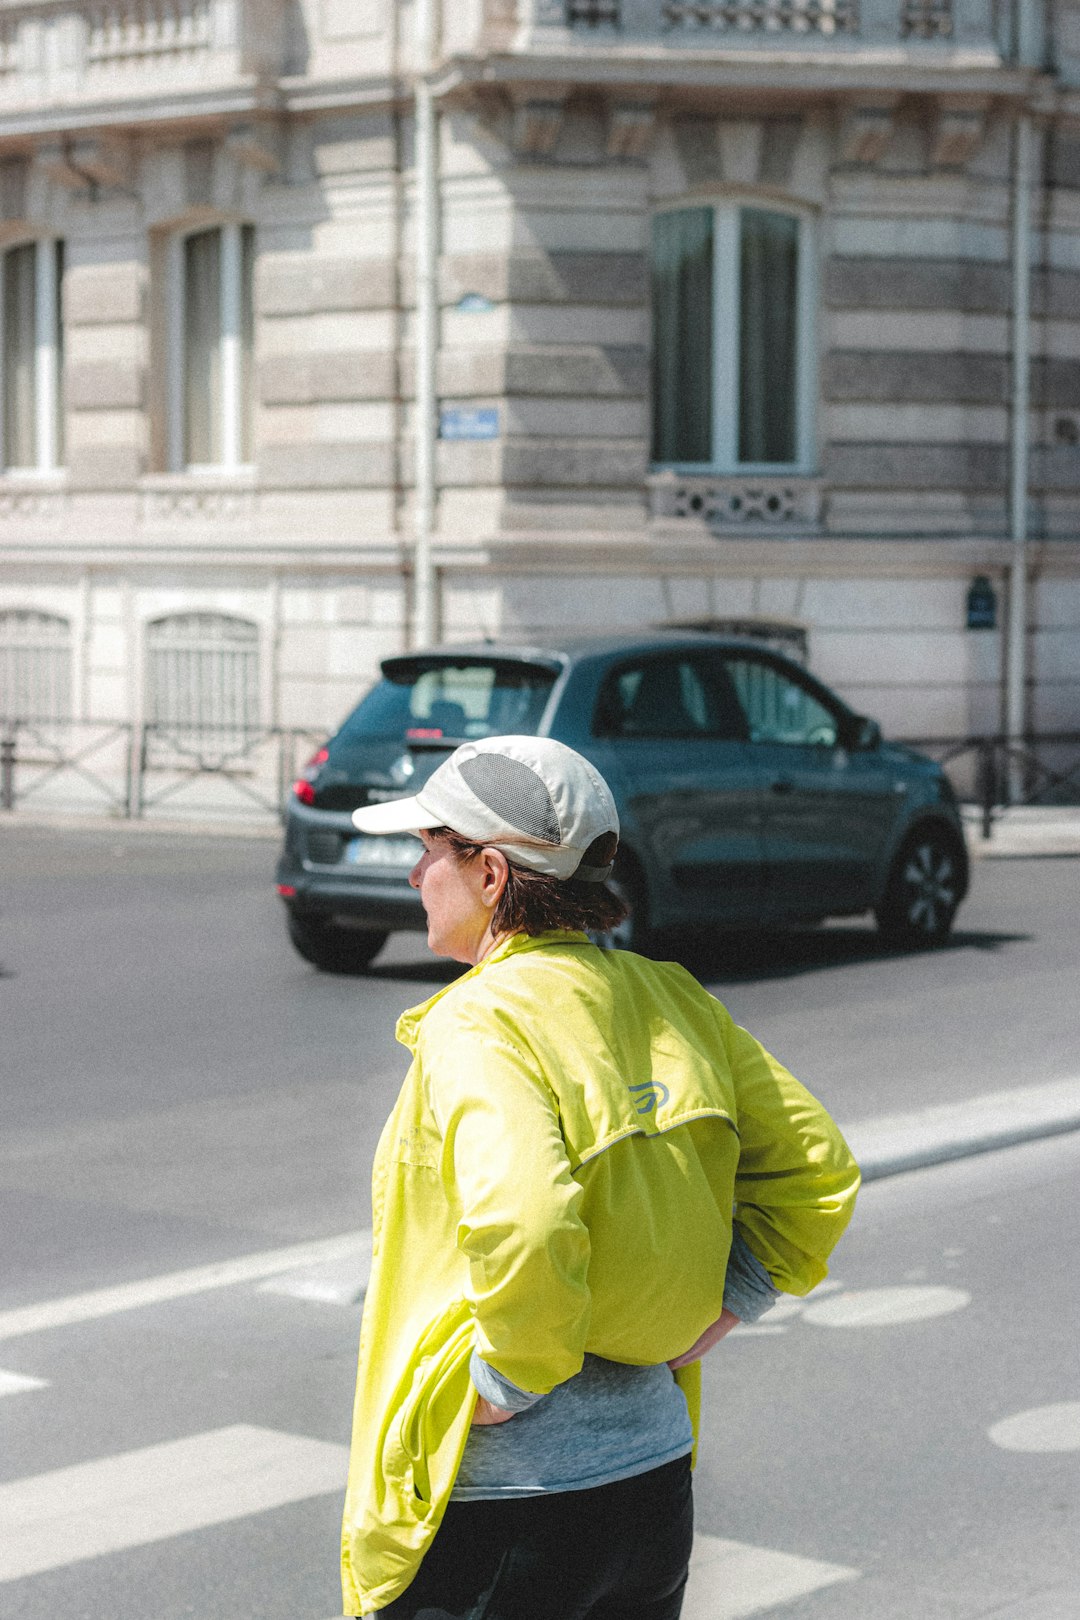 man in yellow jacket wearing white cap walking on street during daytime